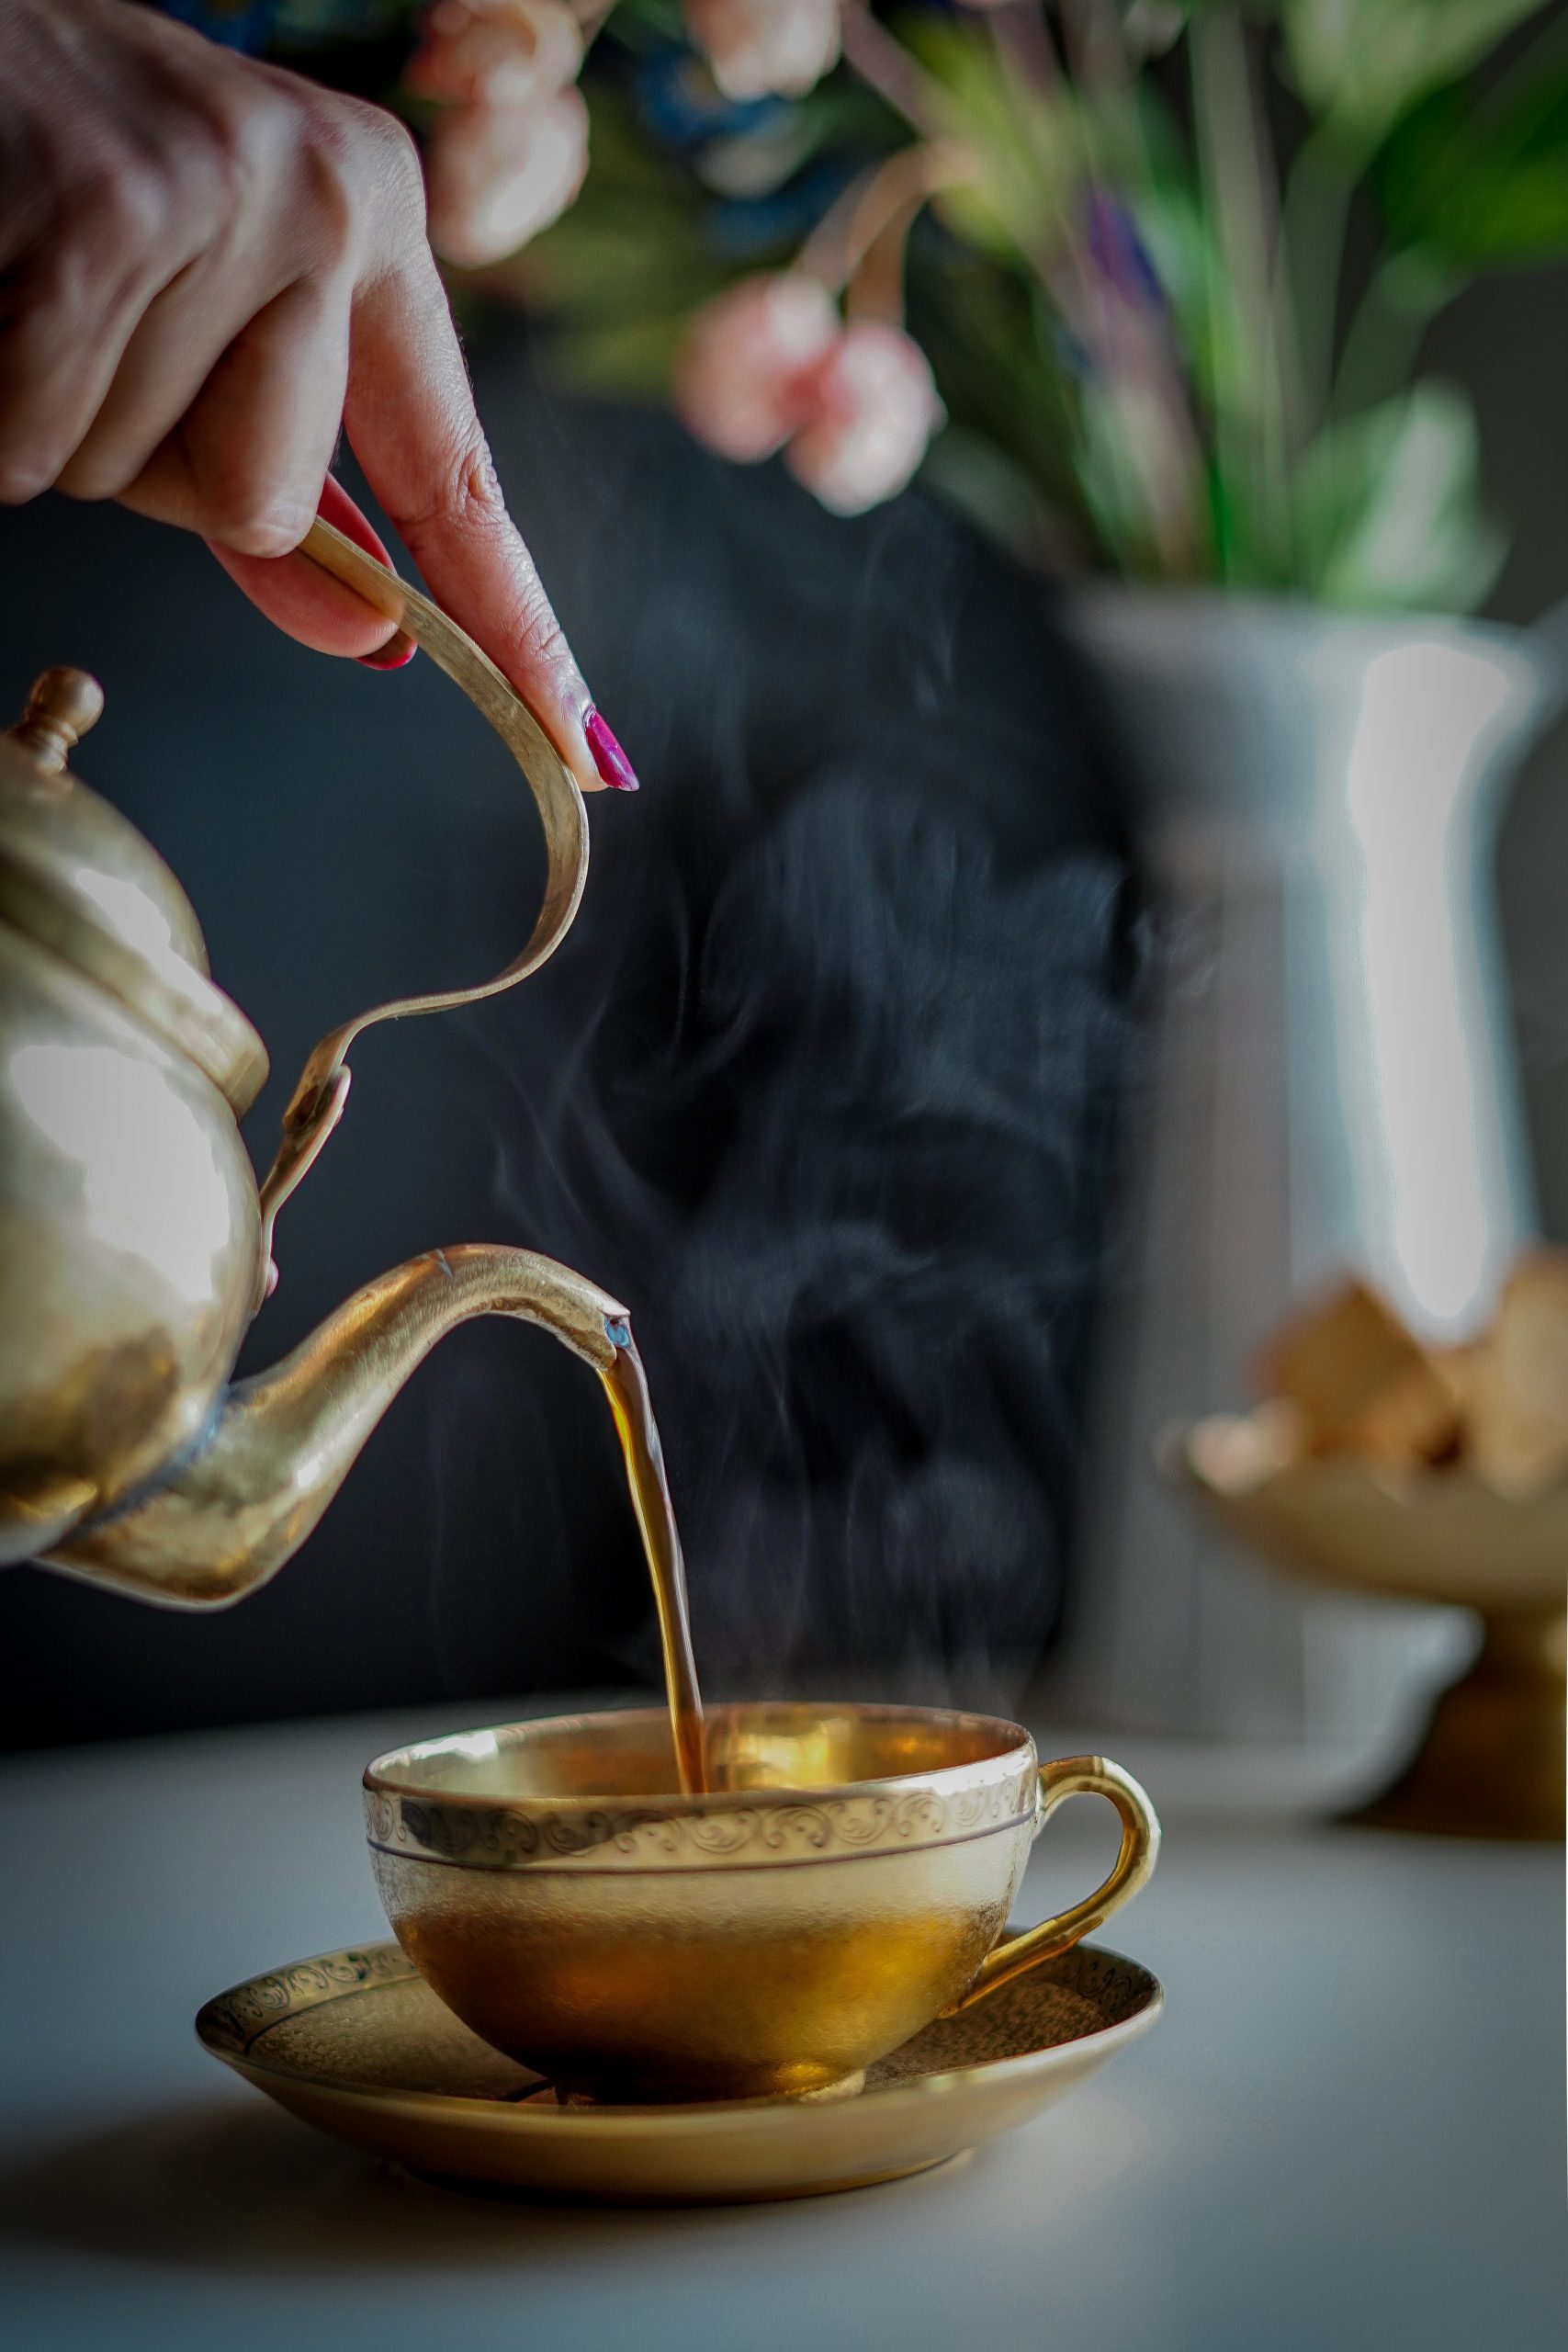 Teekanne, Tee Aufguss, Tee Tasse gold, Zeit für Tee 
Quelle: Unsplash/ Prchi Palwe